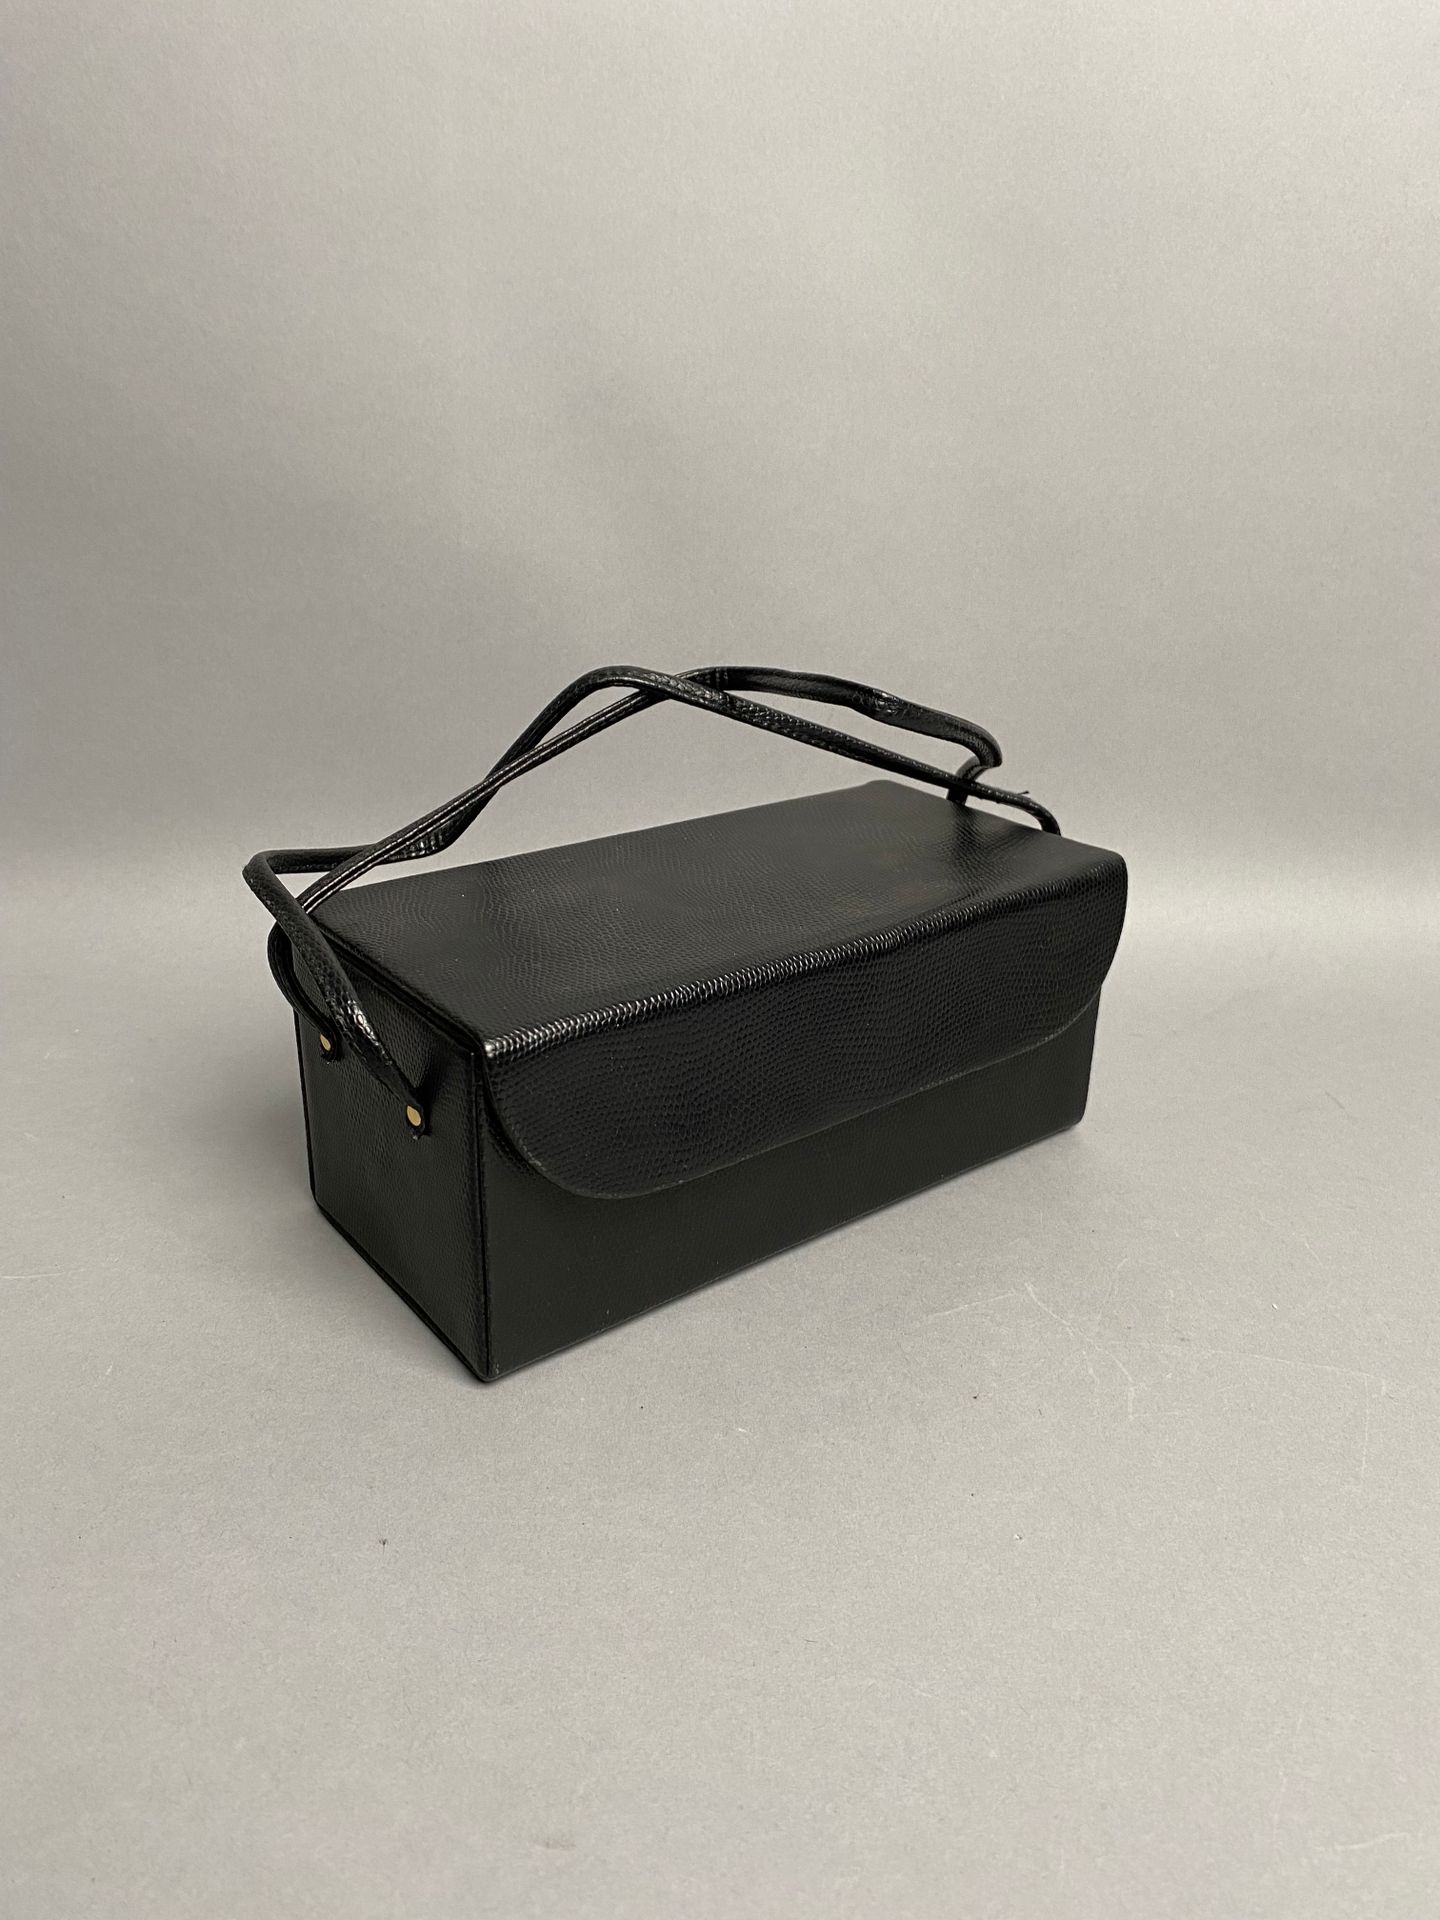 Jean-Louis SCHERRER. Black leather toilet bag of rectang…